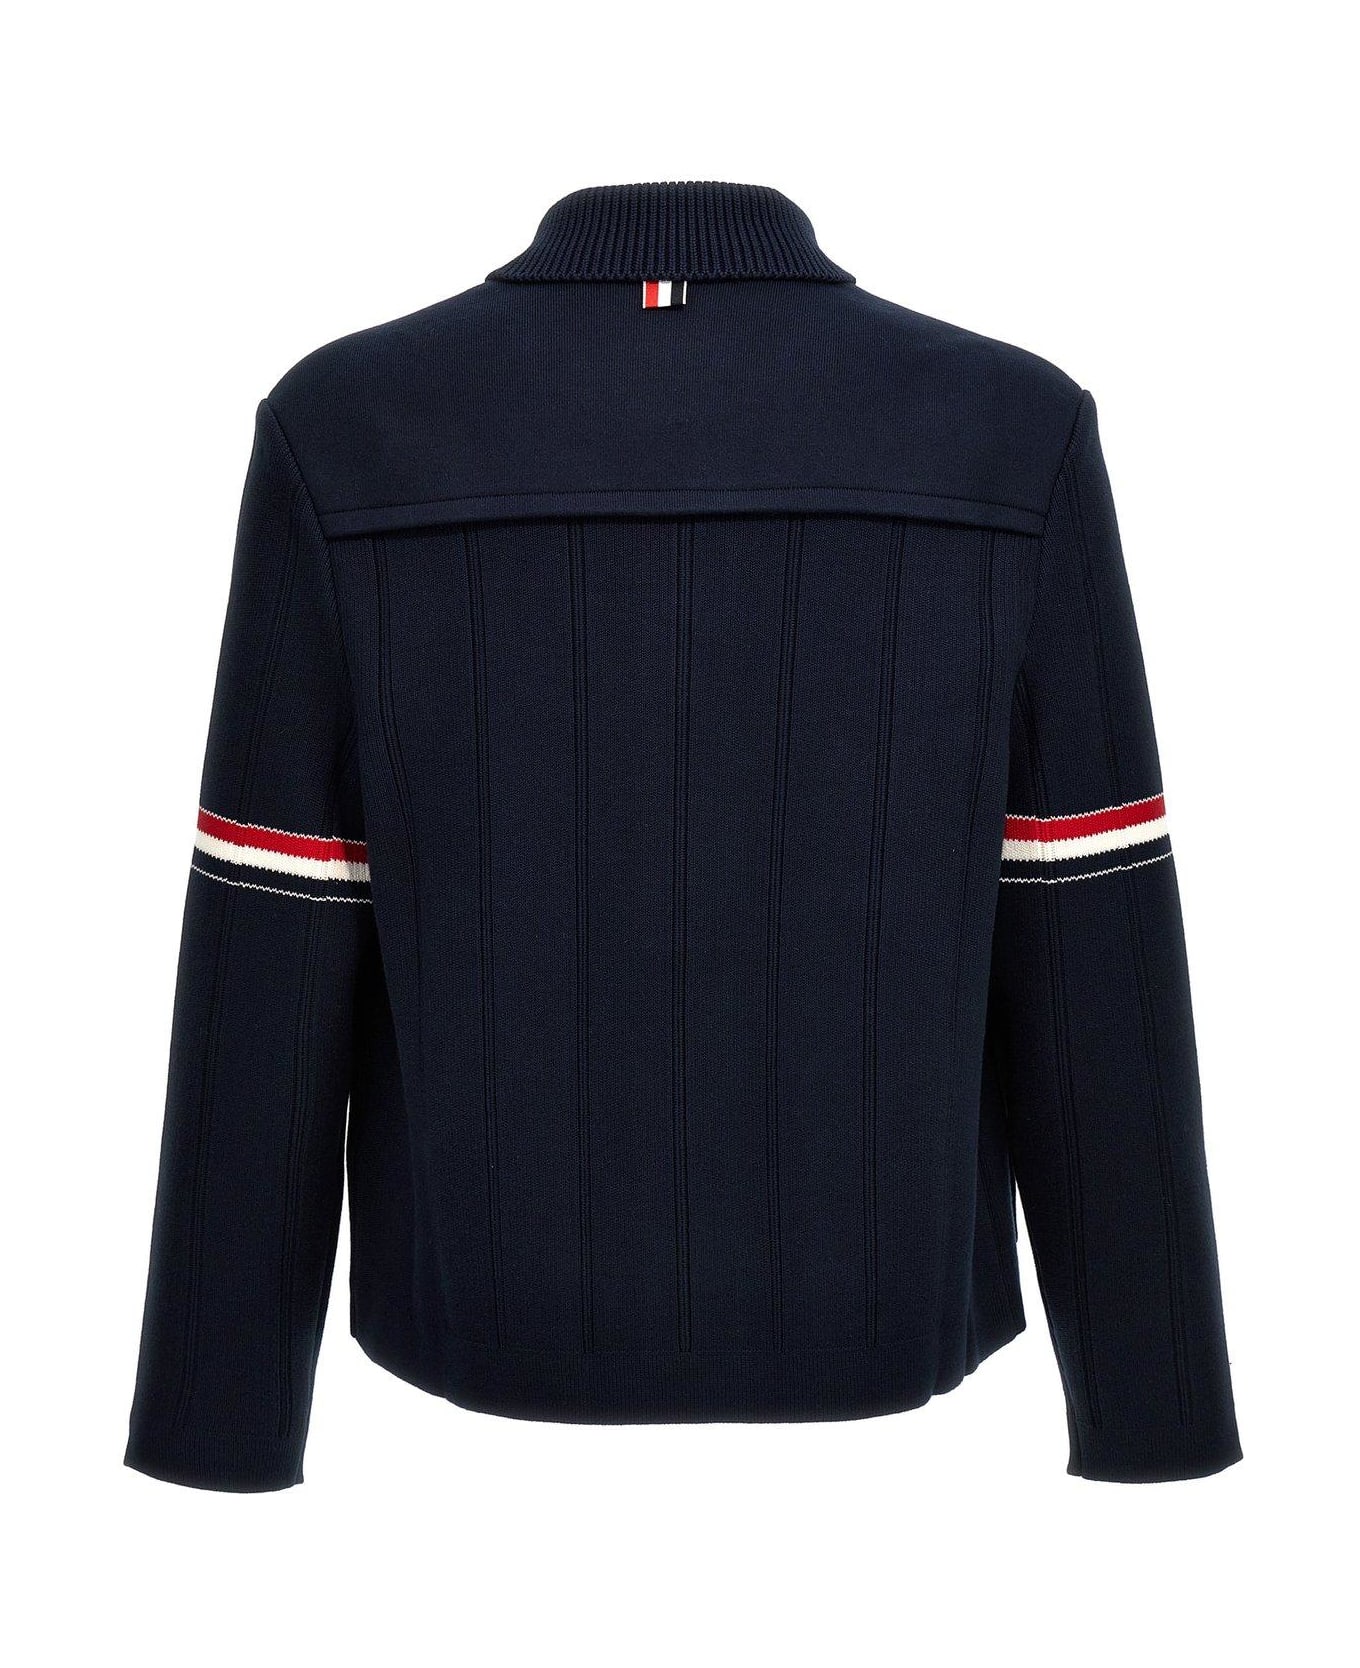 Thom Browne Rwb Striped Shirt Jacket - NAVY